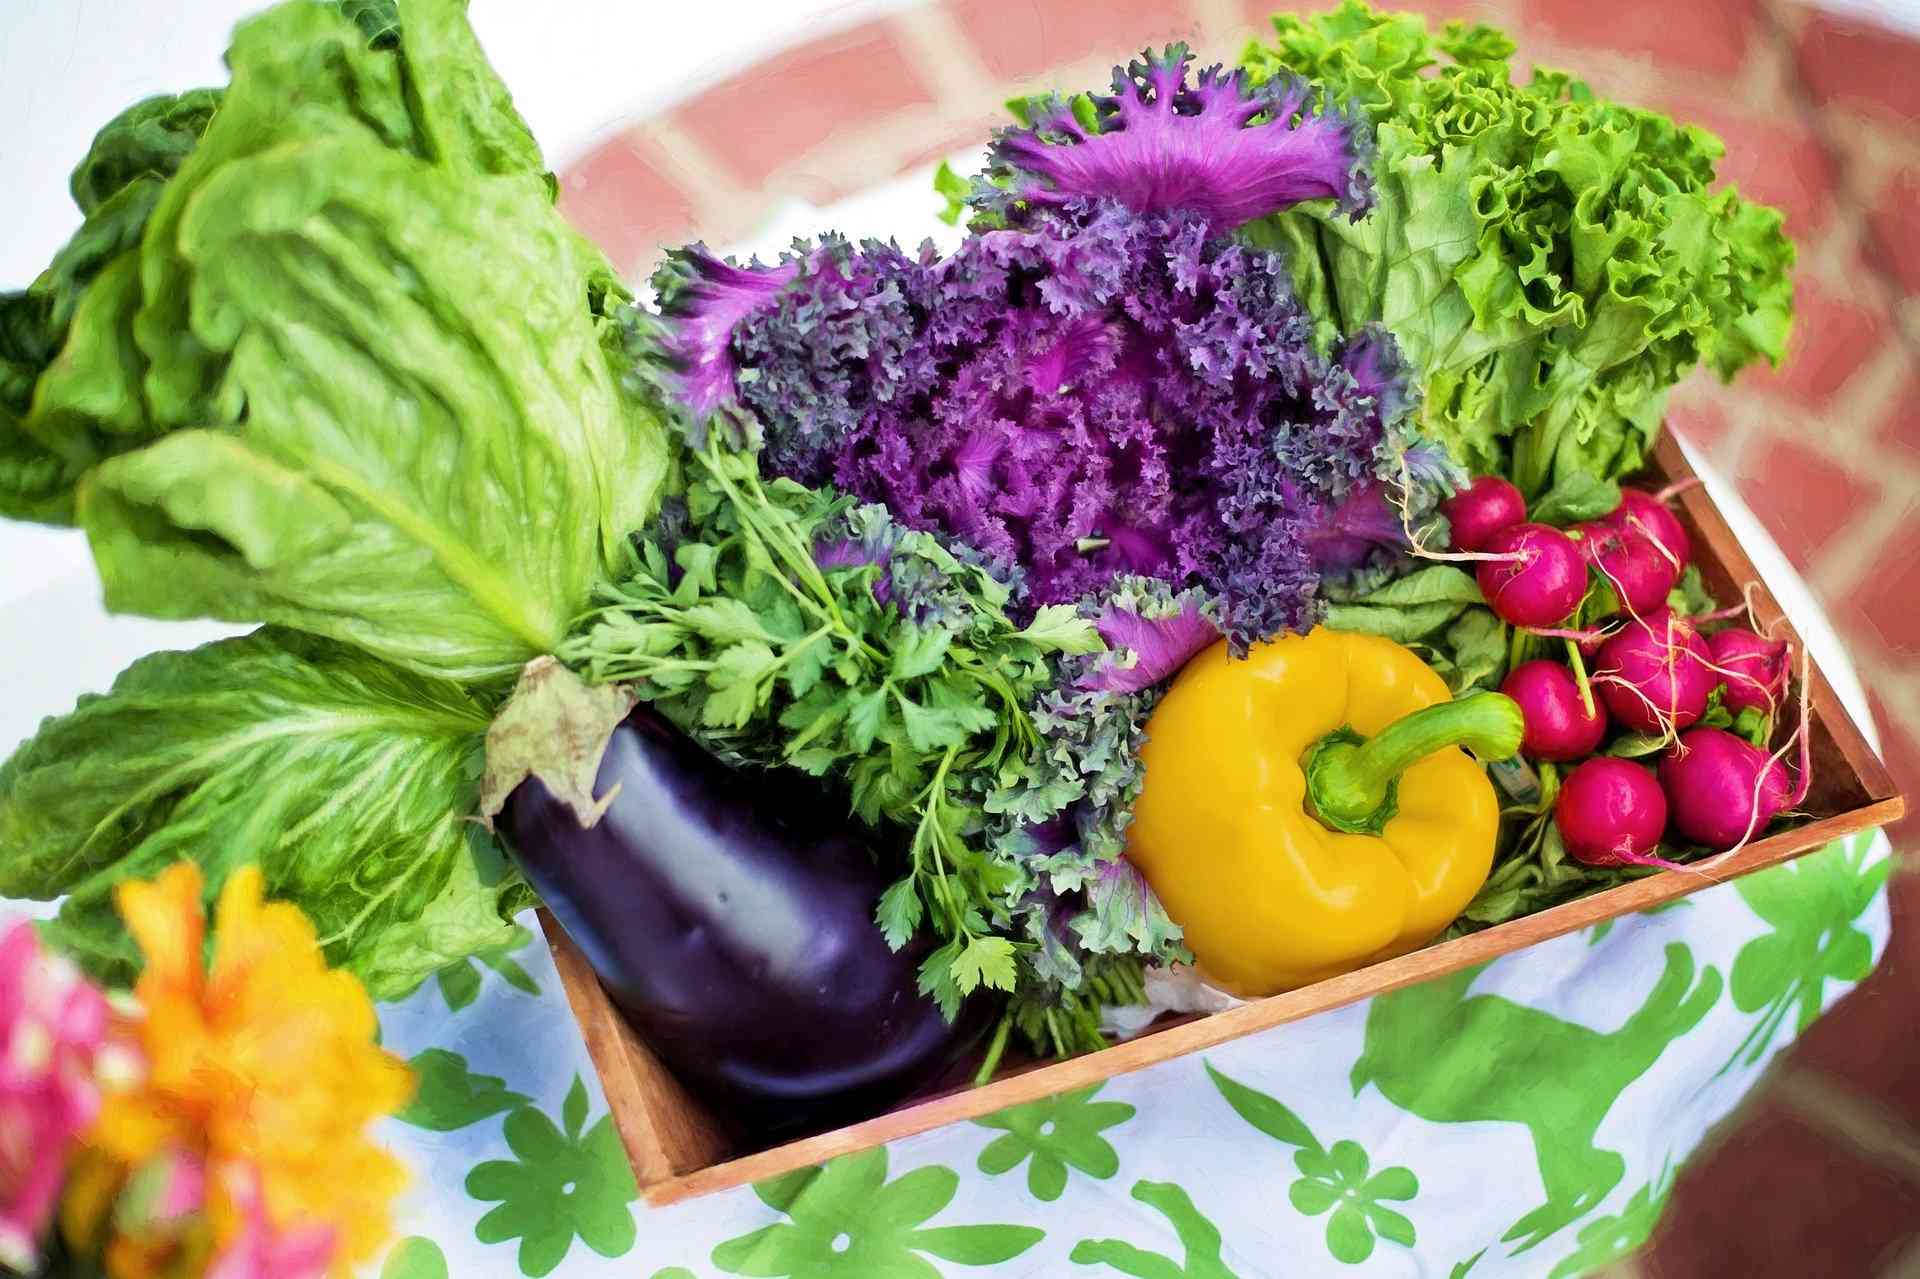  سبزیجات جوان کننده و ضد پیری